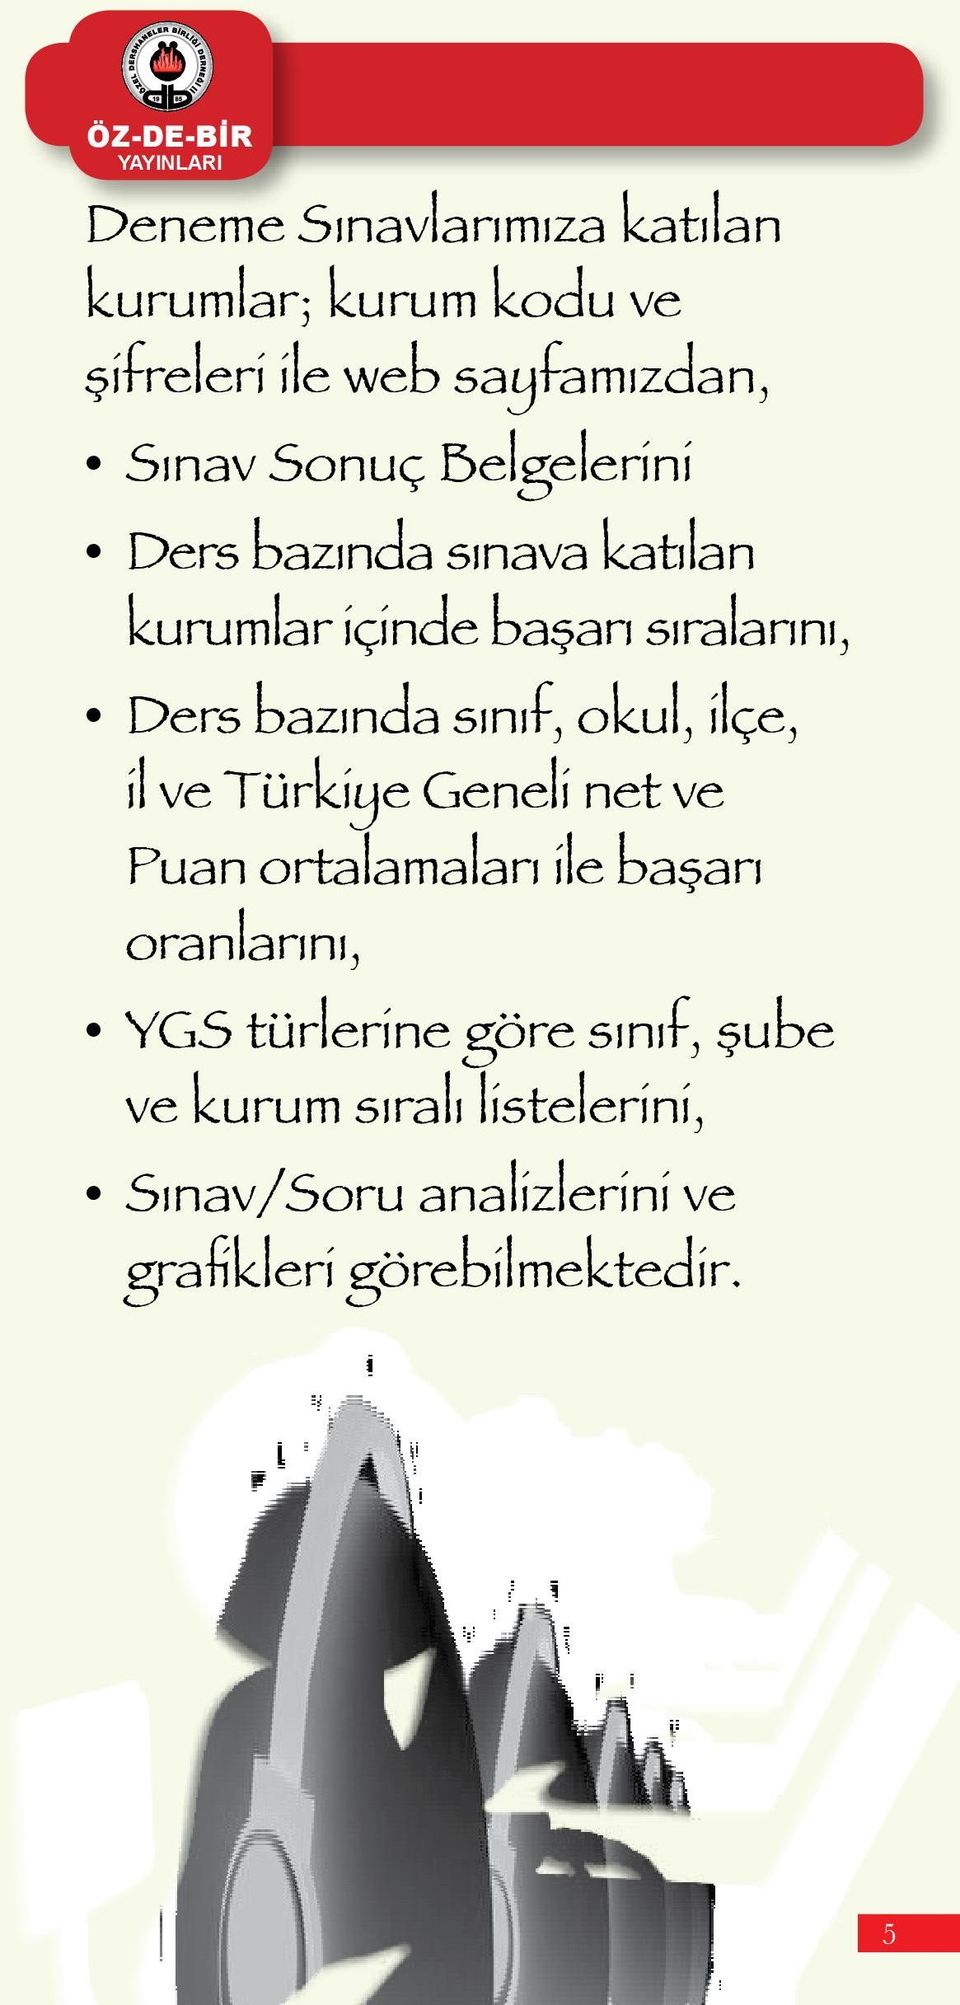 sınıf, okul, ilçe, il ve Türkiye Geneli net ve Puan ortalamaları ile başarı oranlarını, YGS